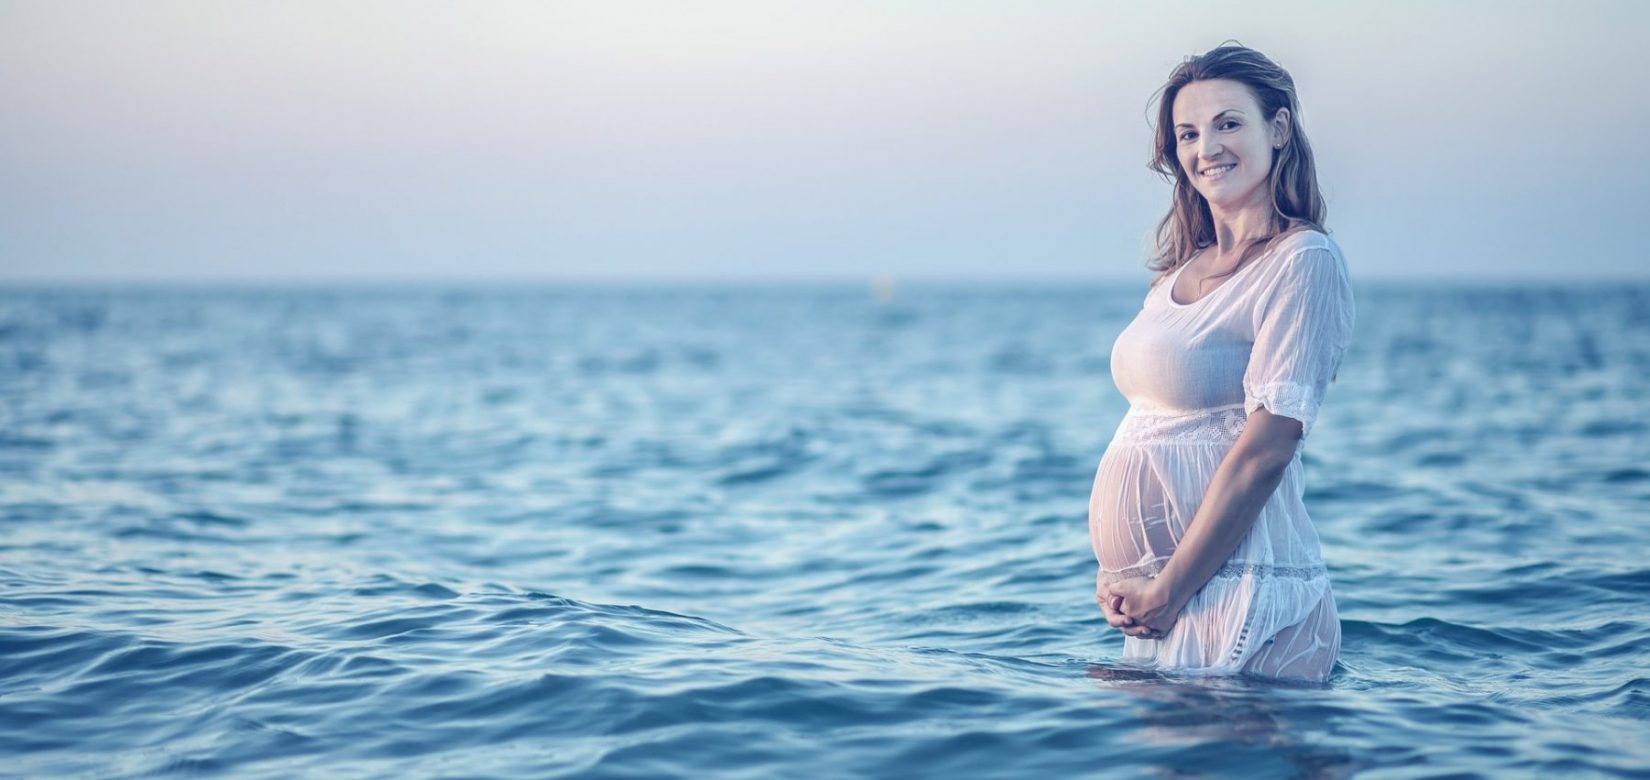 Εγκυμοσύνη και καλοκαίρι πάνε μαζί: Να γιατί είστε τυχερή!